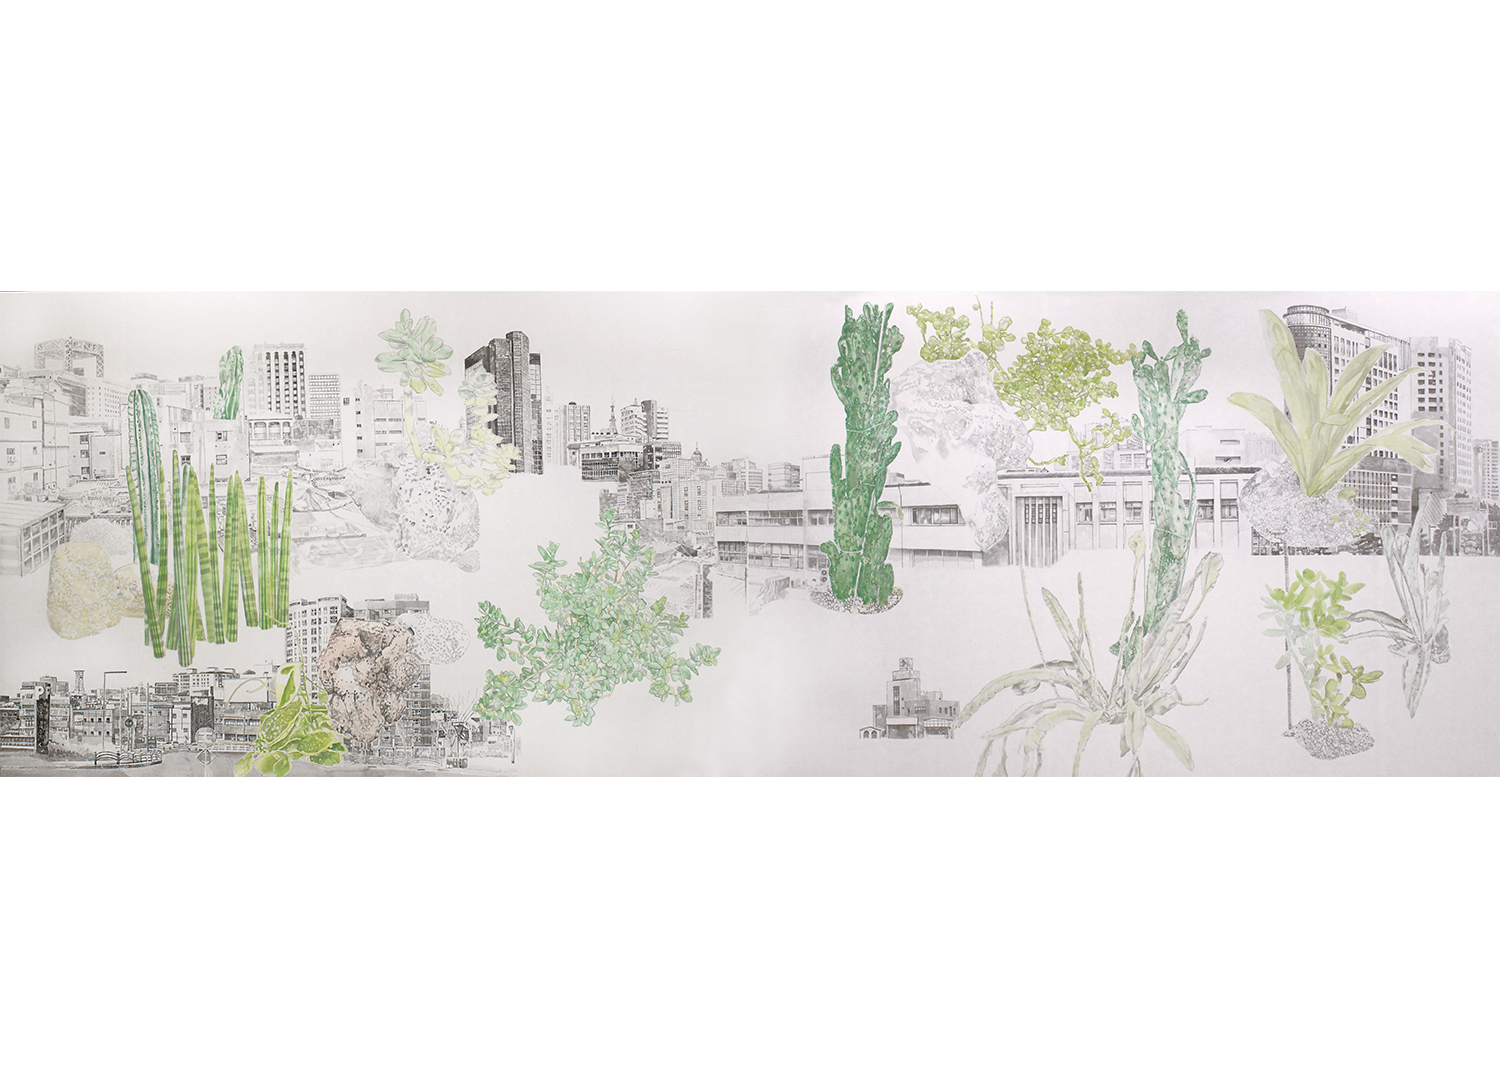 삼시소원도三市小園圖, 114 x 178 cm x 2폭, 비단에 수묵채색, 2019@Small garden within three cities, 114 x 178cm x 2pcs, ink and mineral pigments on silk 2019